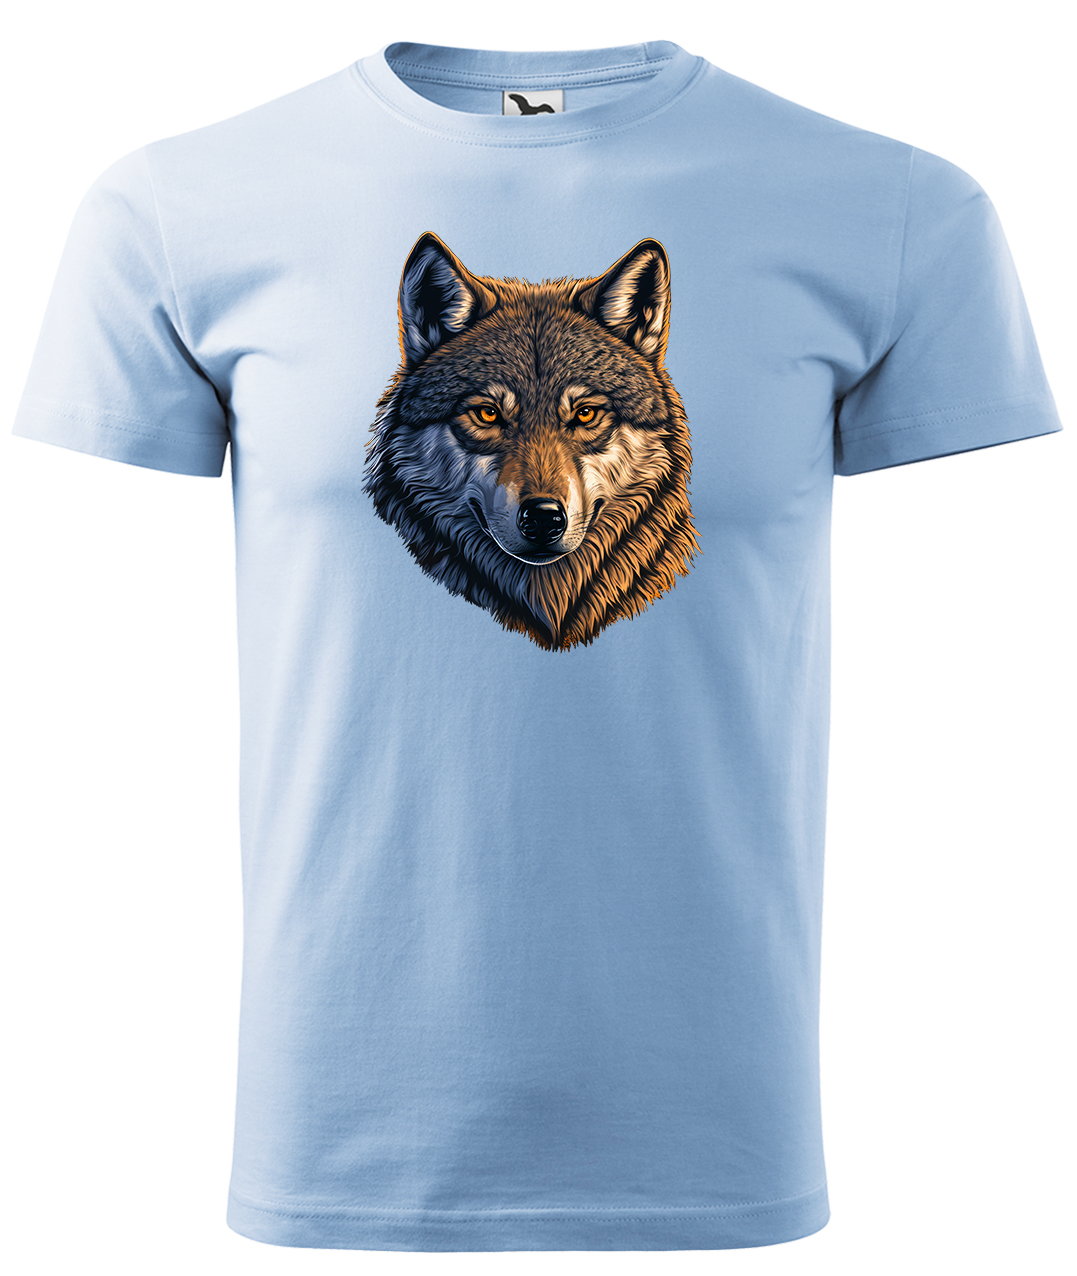 Dětské tričko s vlkem - Hlava vlka Velikost: 10 let / 146 cm, Barva: Nebesky modrá (15), Délka rukávu: Krátký rukáv